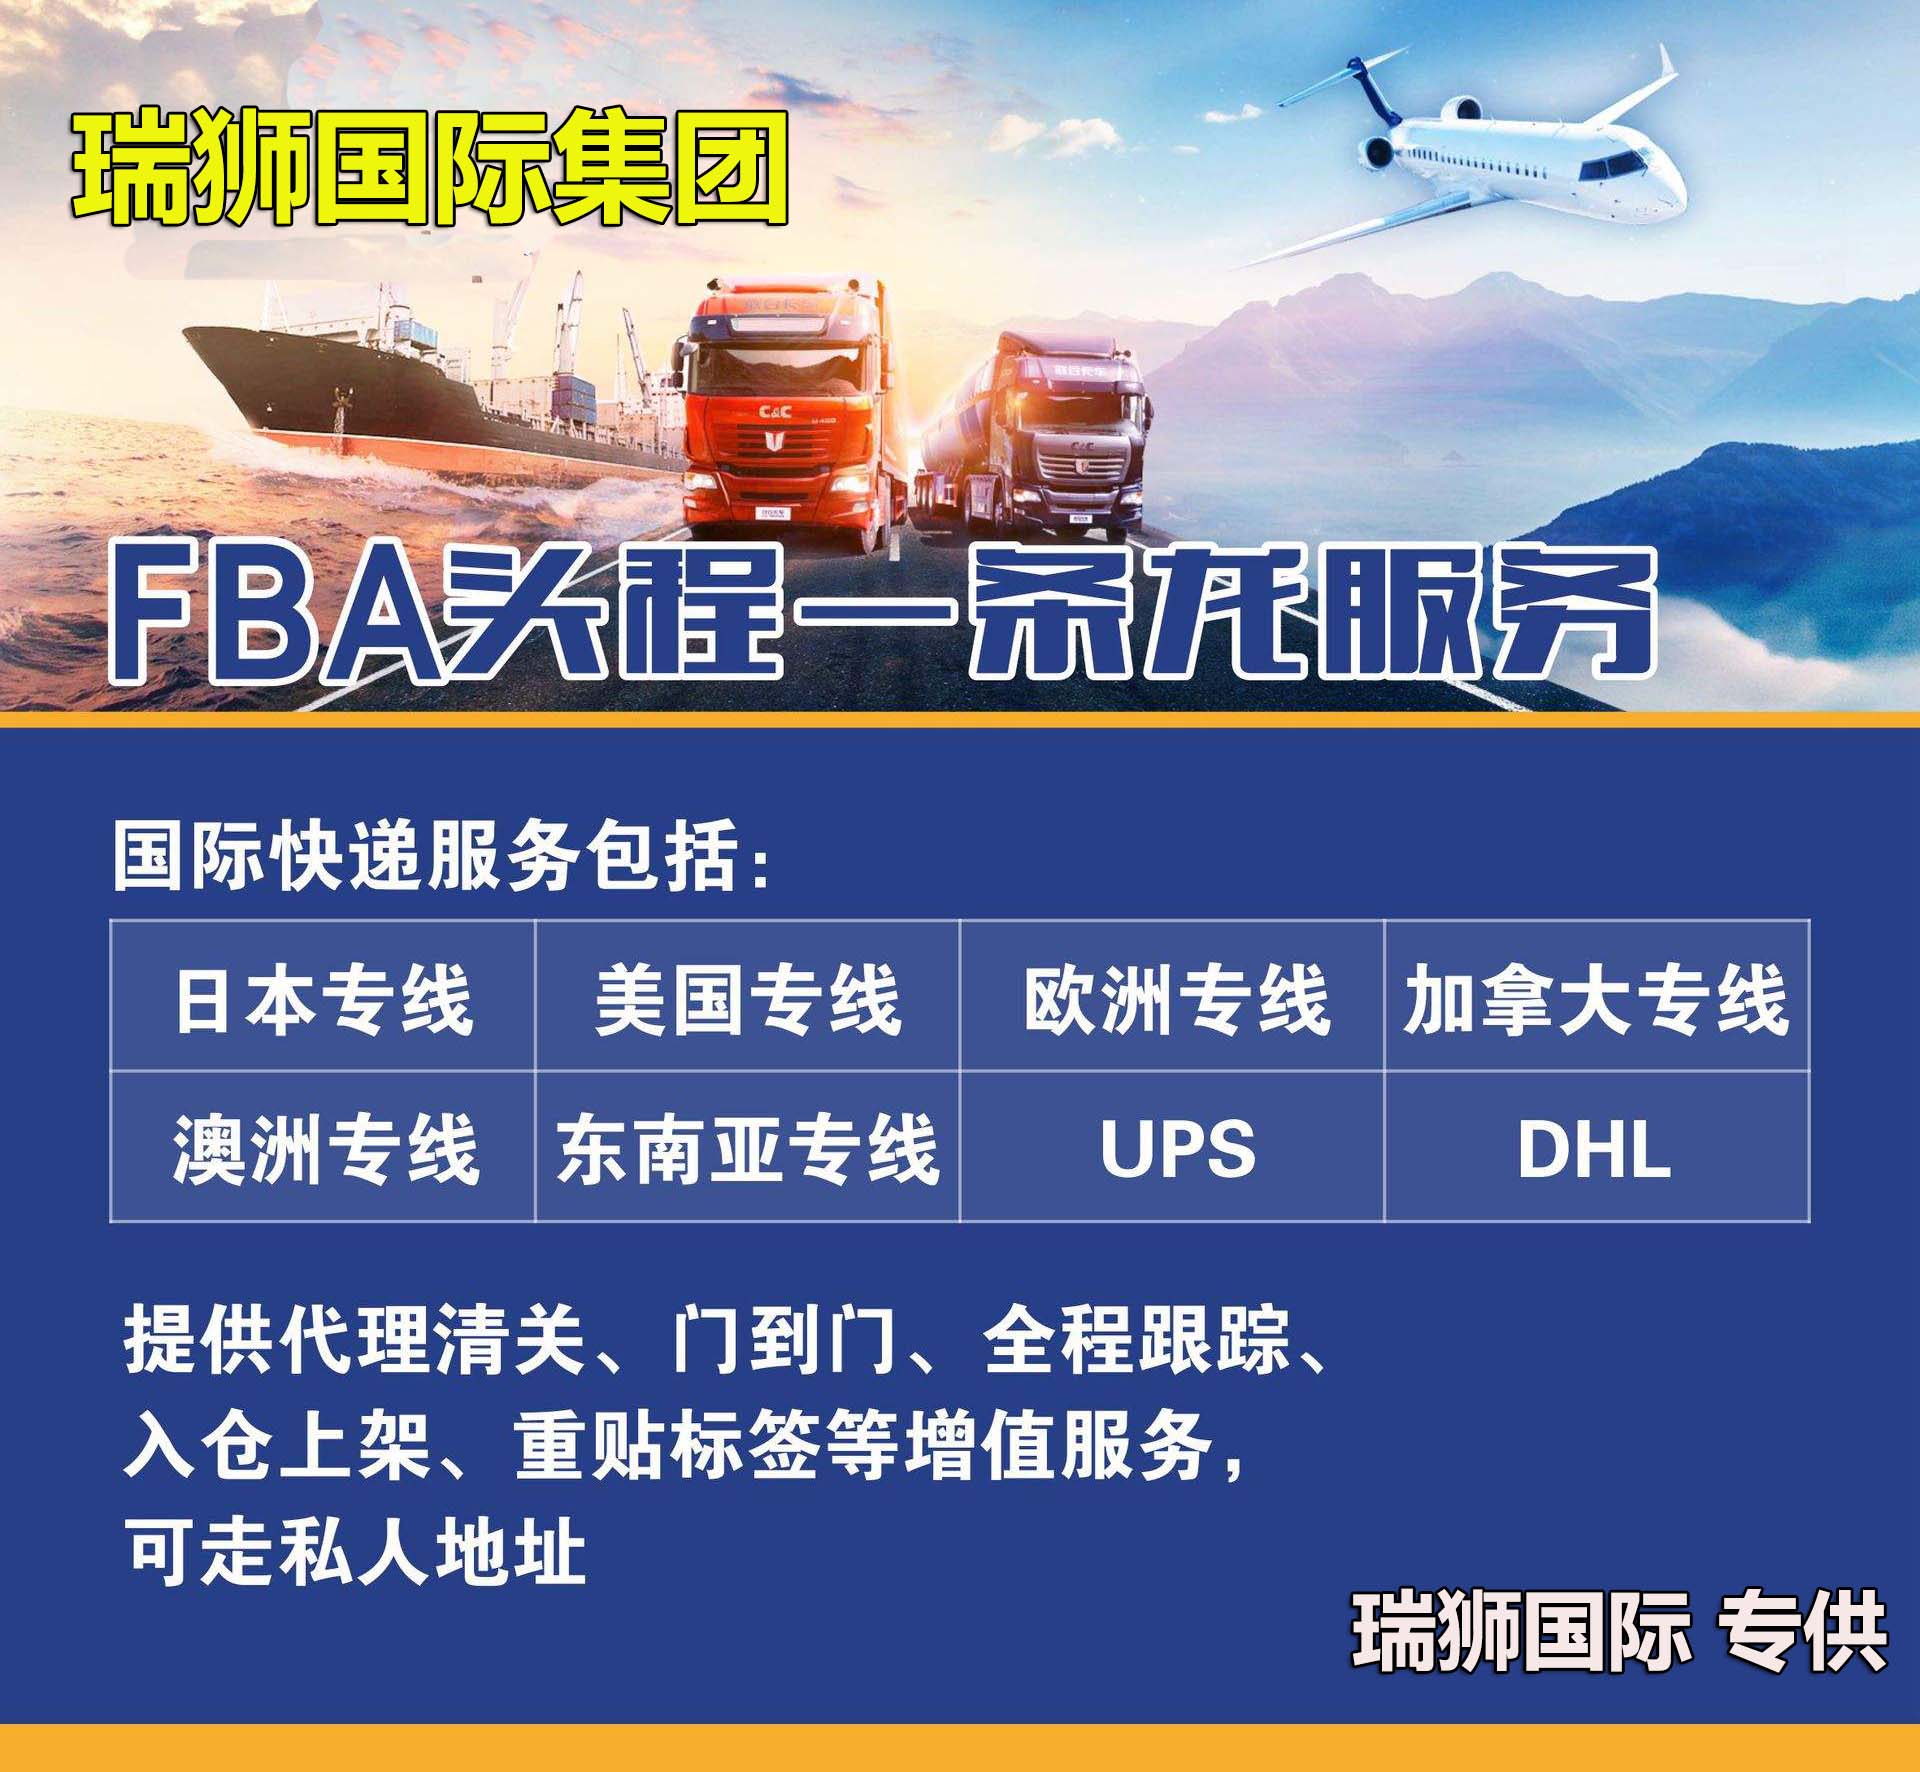 货运代理FOB运输、CIF物流、CFR货运、货运代理DAP国际物流、DDU国际货运代理、DDP双清包税到门